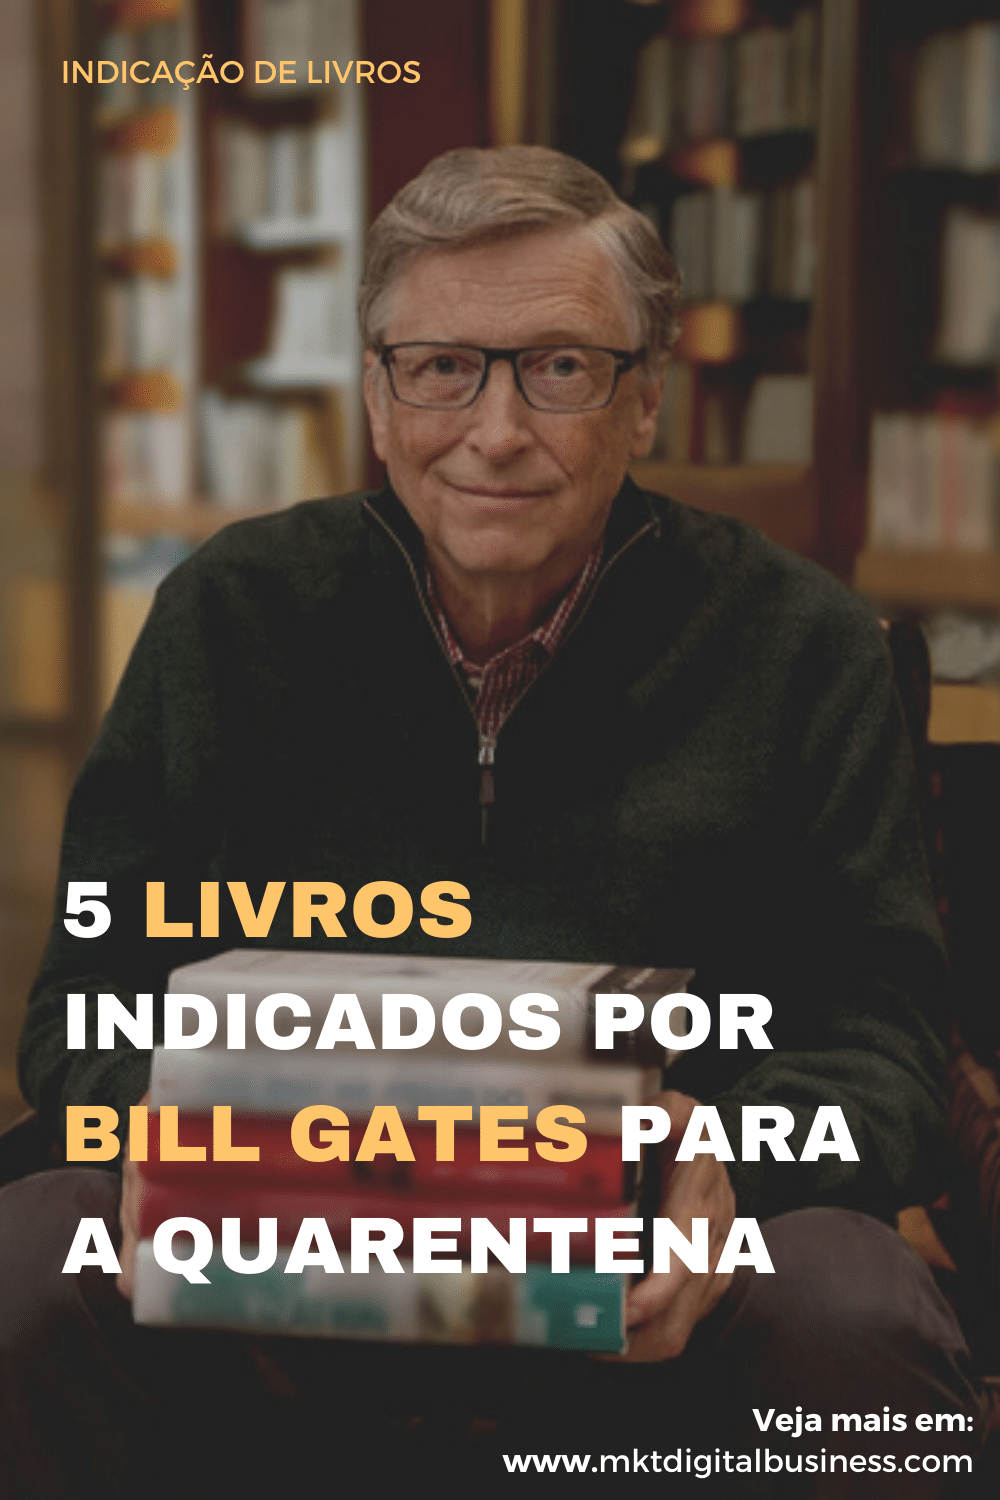 5 Livros indicados por Bill Gates para a quarentena